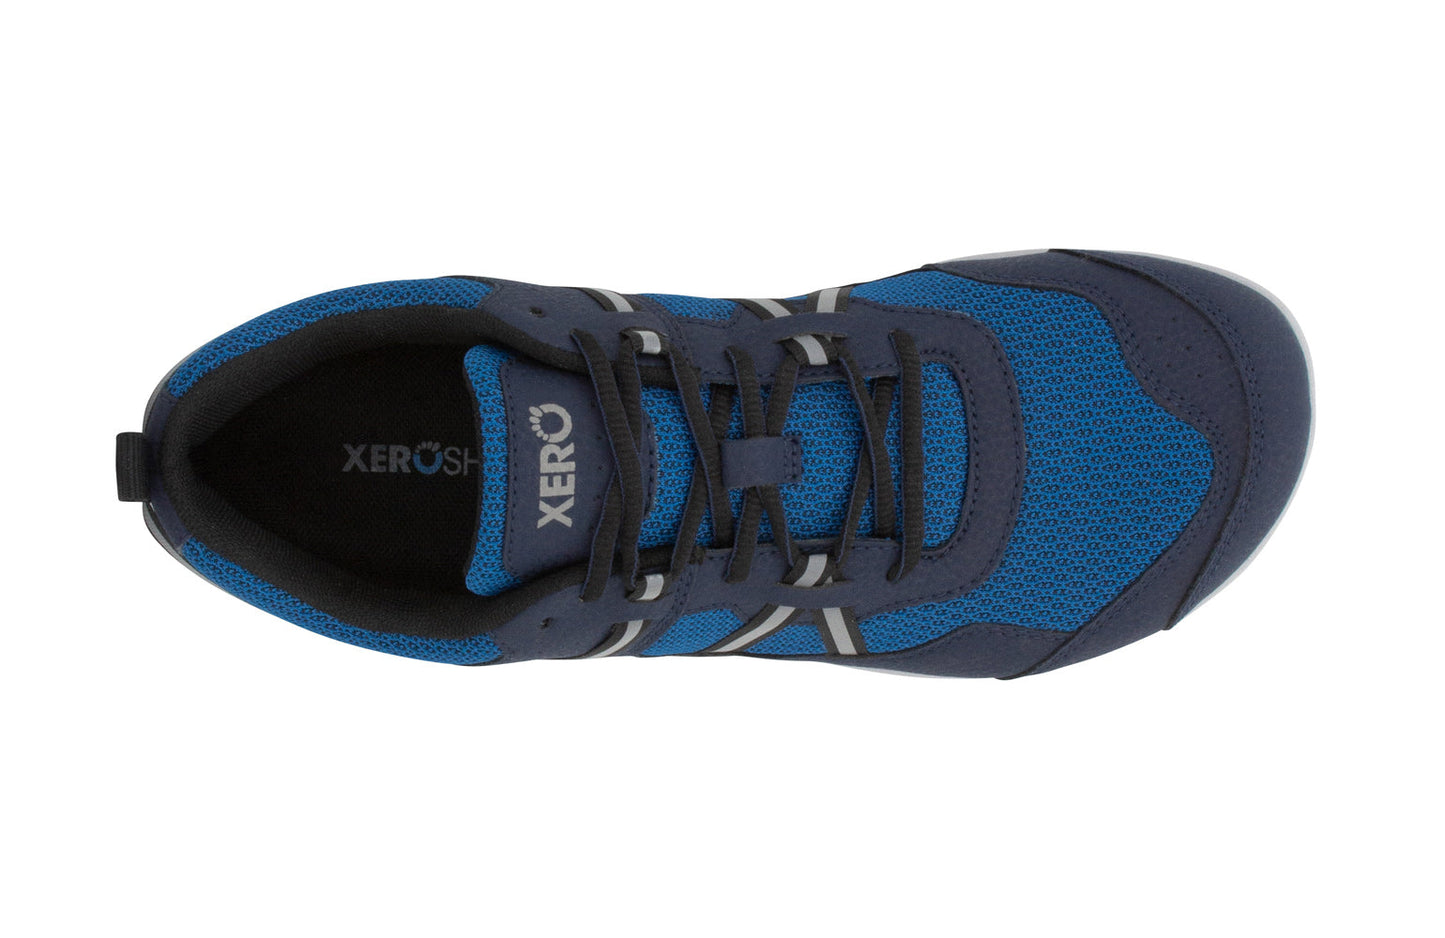 Xero Shoes Prio barfods løbesko/træningssko til mænd i farven mykonos blue, top